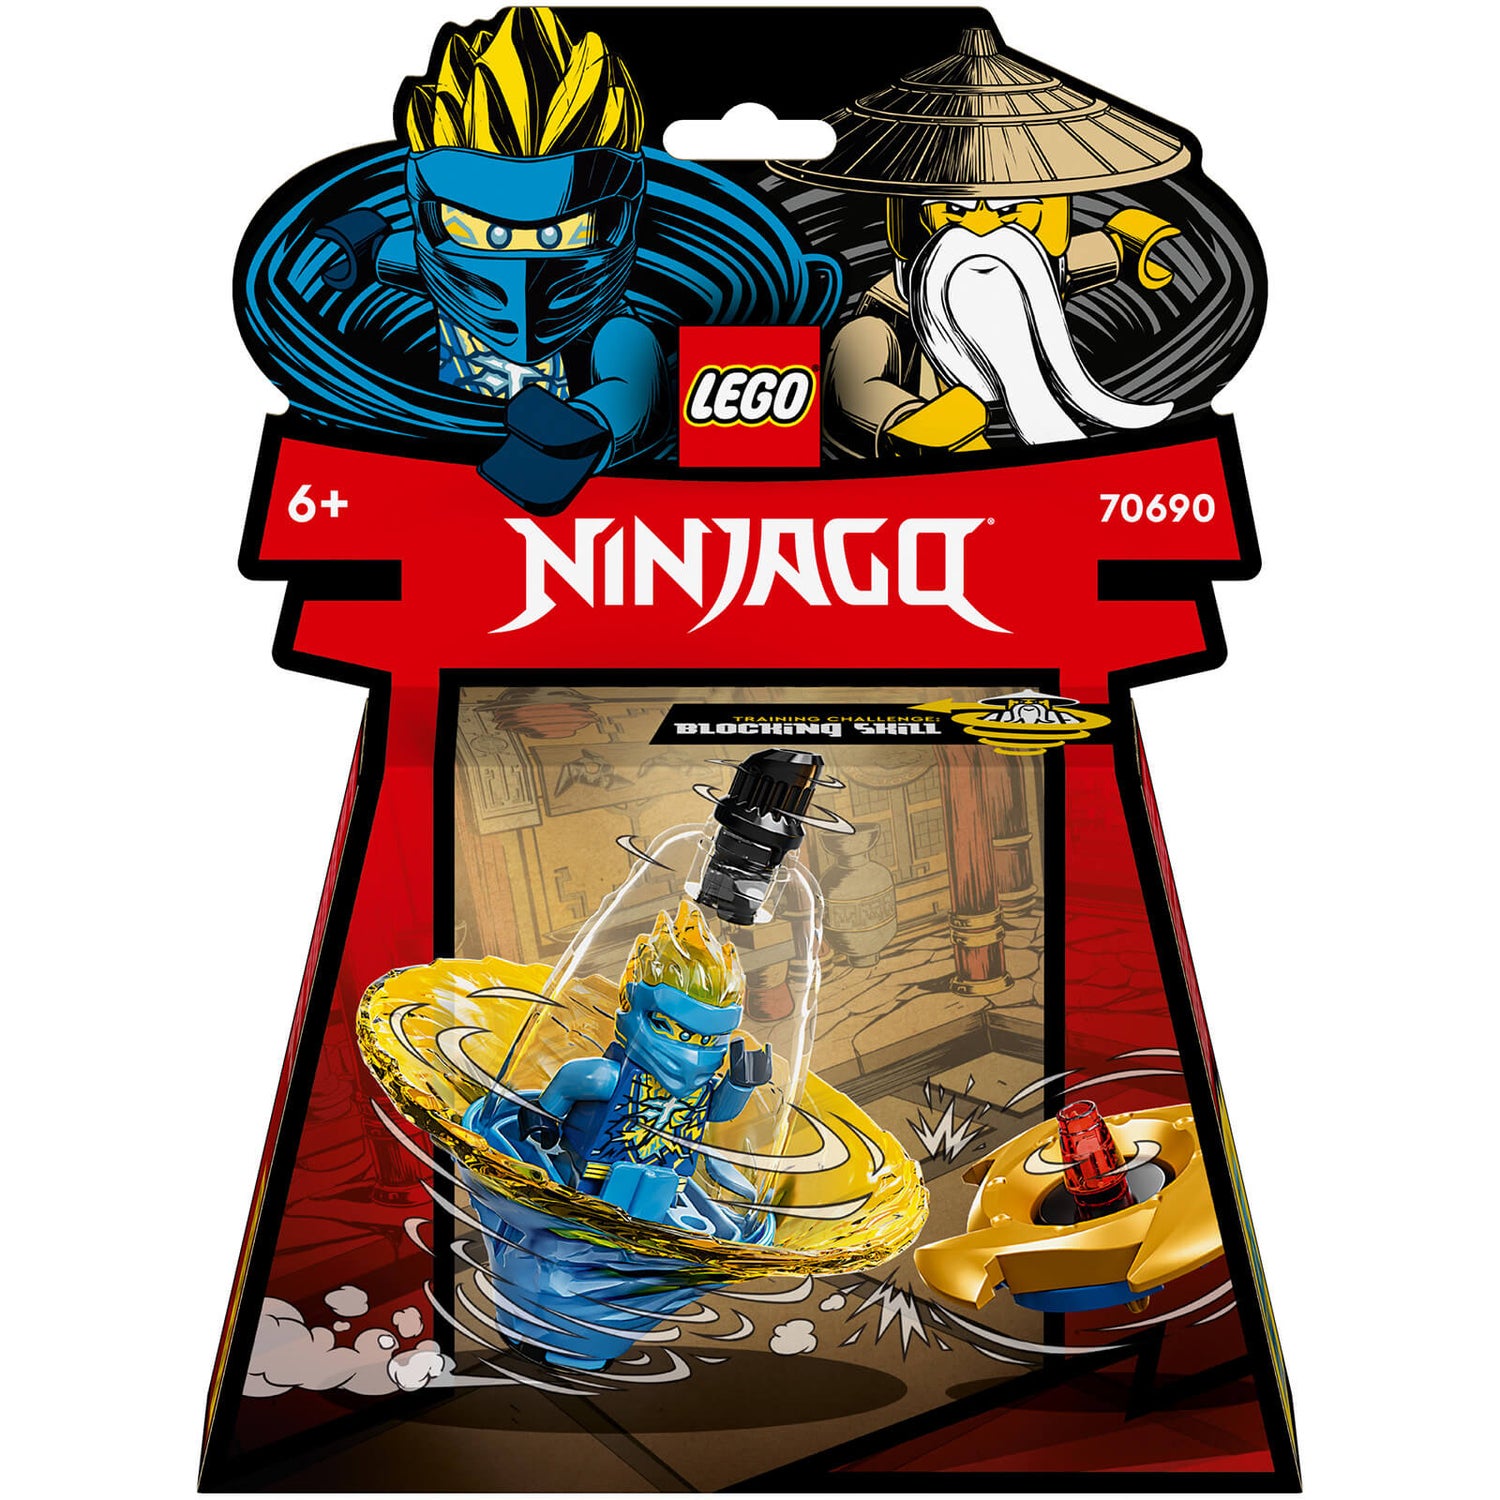 LEGO NINJAGO: Jay’s Spinjitzu Ninja Training Spin Toy (70690)